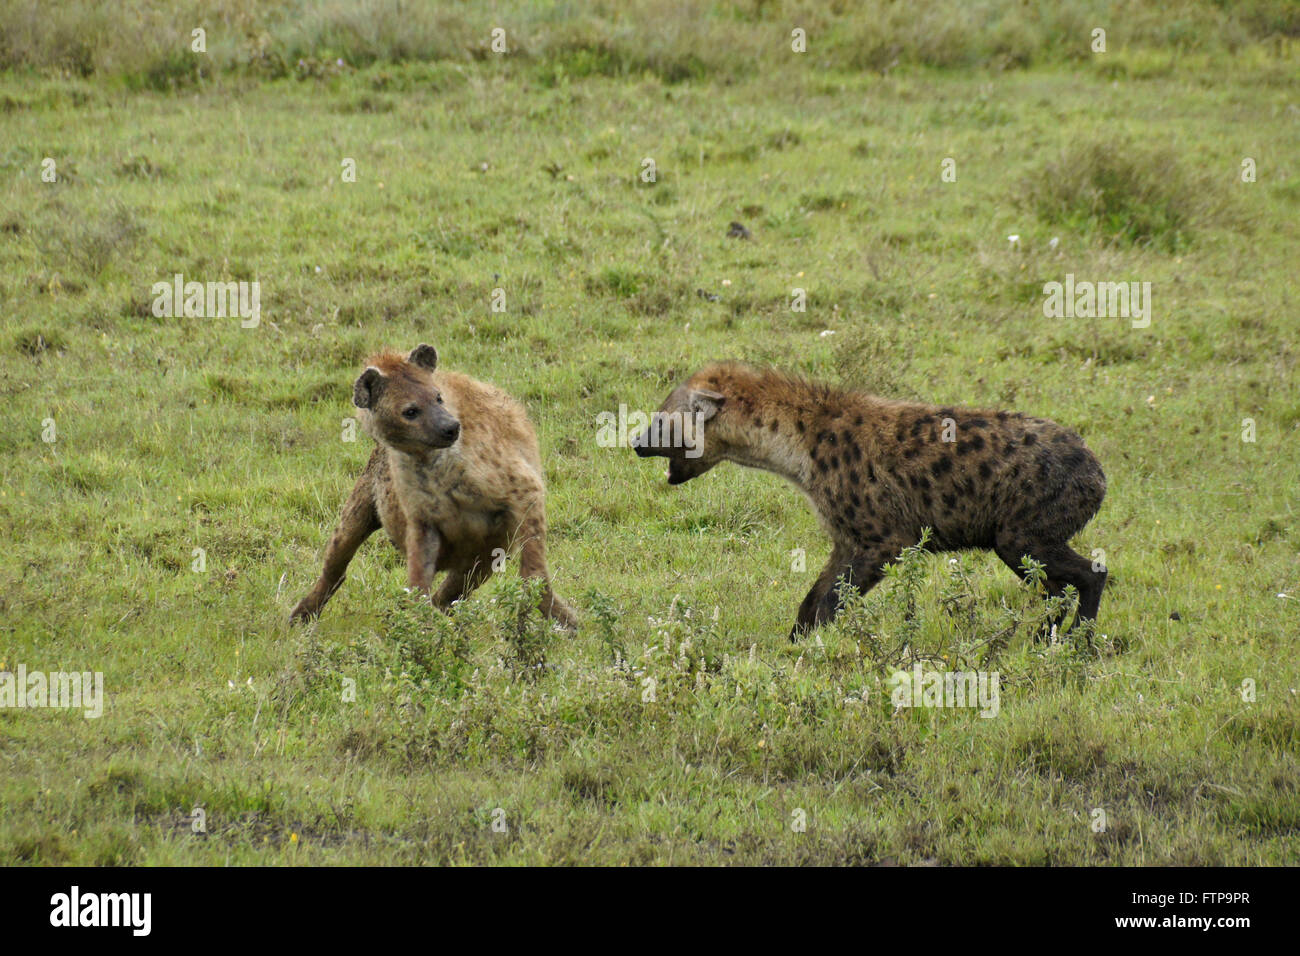 Two spotted hyenas fighting, Ngorongoro Conservation Area (Ndutu), Tanzania Stock Photo